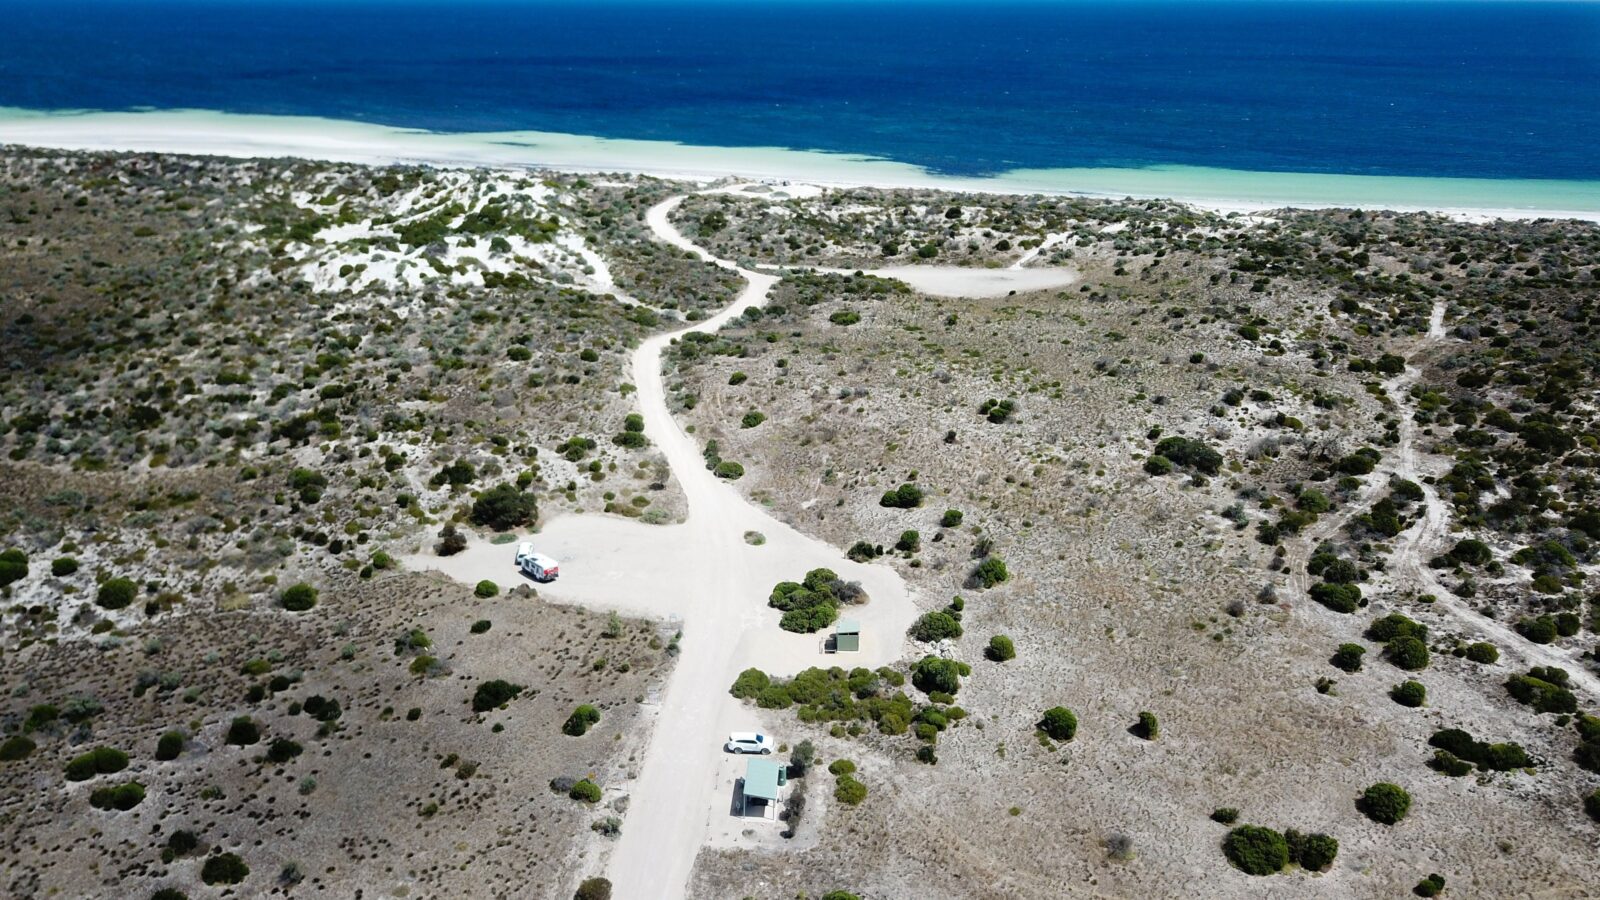 Drone view of white gravel track, shelter, blue ocean on horizon